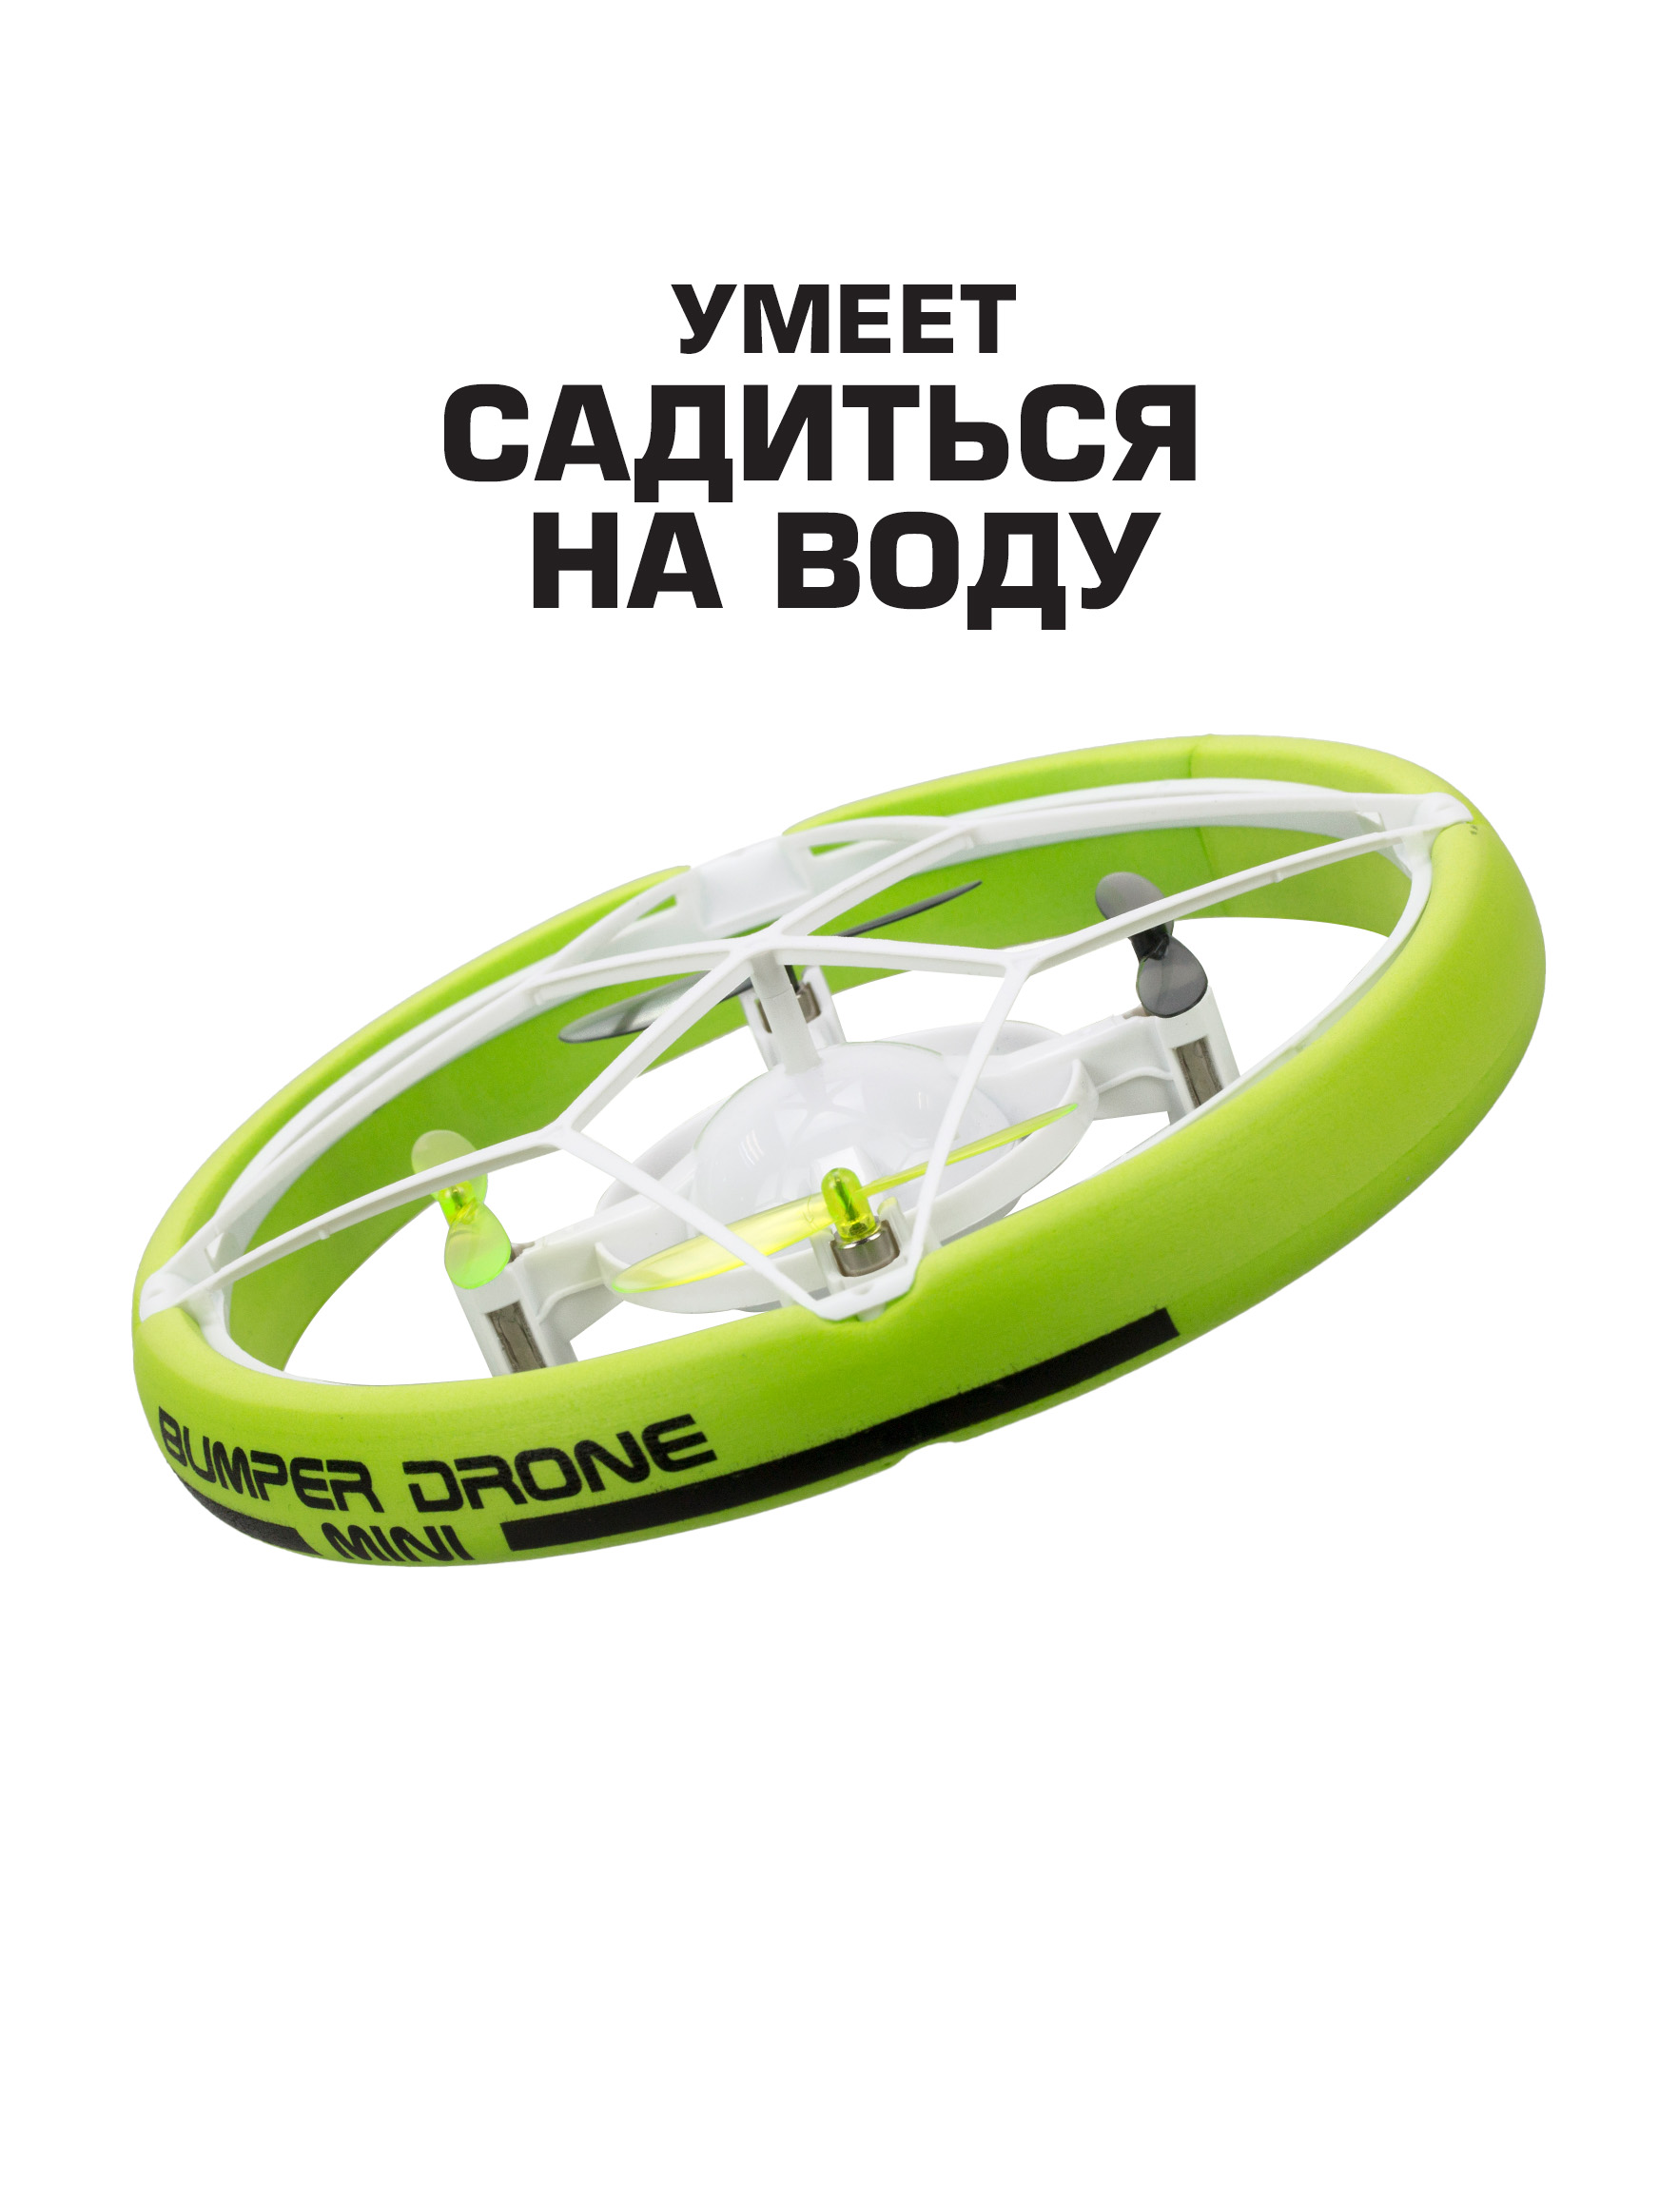 Дрон Flybotic мини Бампер на радиоуправлении зеленый - фото 1